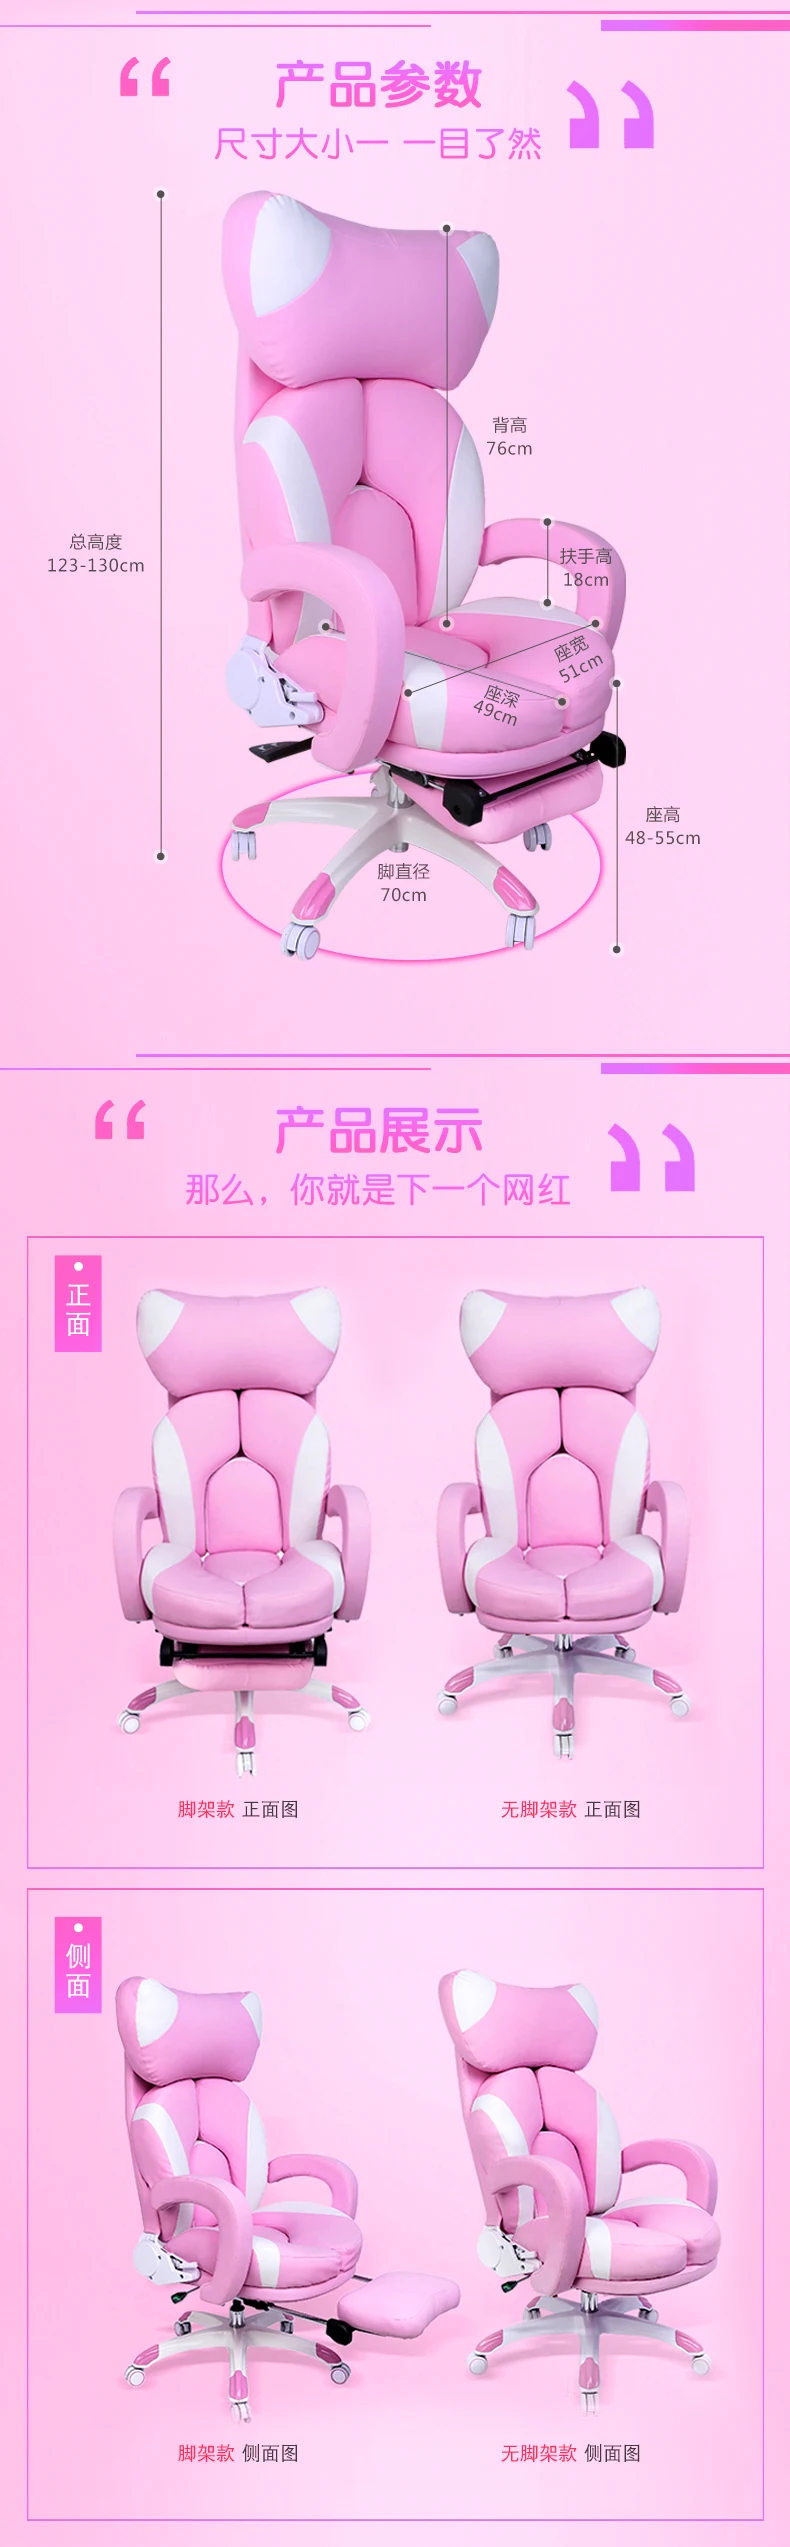 Модные Офисные стулья луи удобные и модные розовый компьютер, домашняя игра, прямая трансляция, прекрасный подъем и вращение